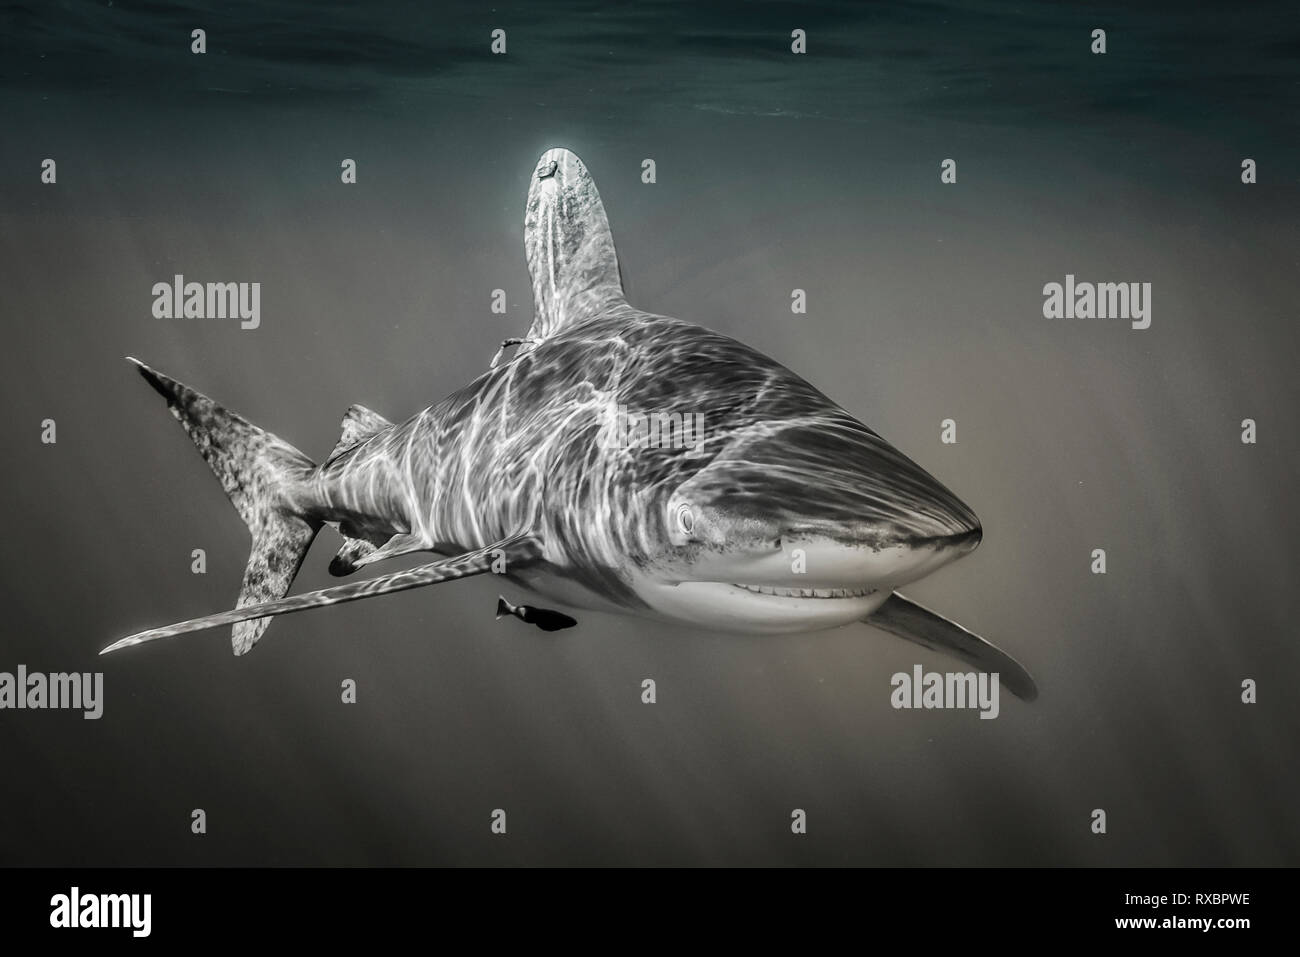 Oceanic Weißspitzen Hai, Carcharhinus Longimanus, ungefähr 7 Meilen offshore, Cat Island, Karibik, Bahamas, kritisch gefährdet im Nordwesten und Western Central Atlantic Ocean Stockfoto